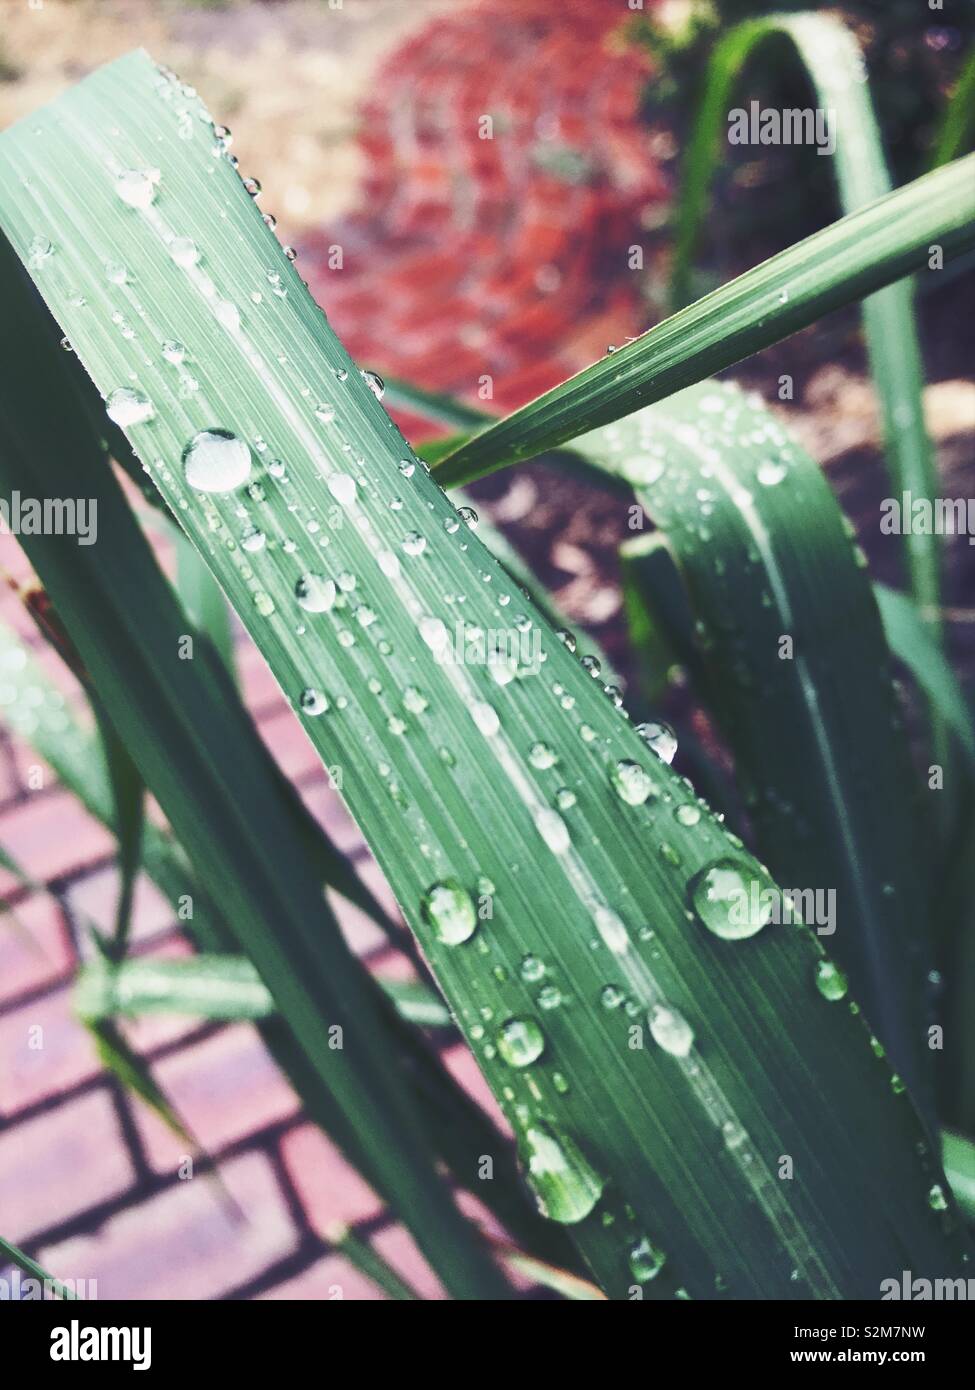 Einen Vordergrund Ansicht von Wassertropfen auf einem Lemon Grass Blatt. Einem leicht verschwommenen rötlich-braunen Stein Pflaster im Hintergrund. Stockfoto